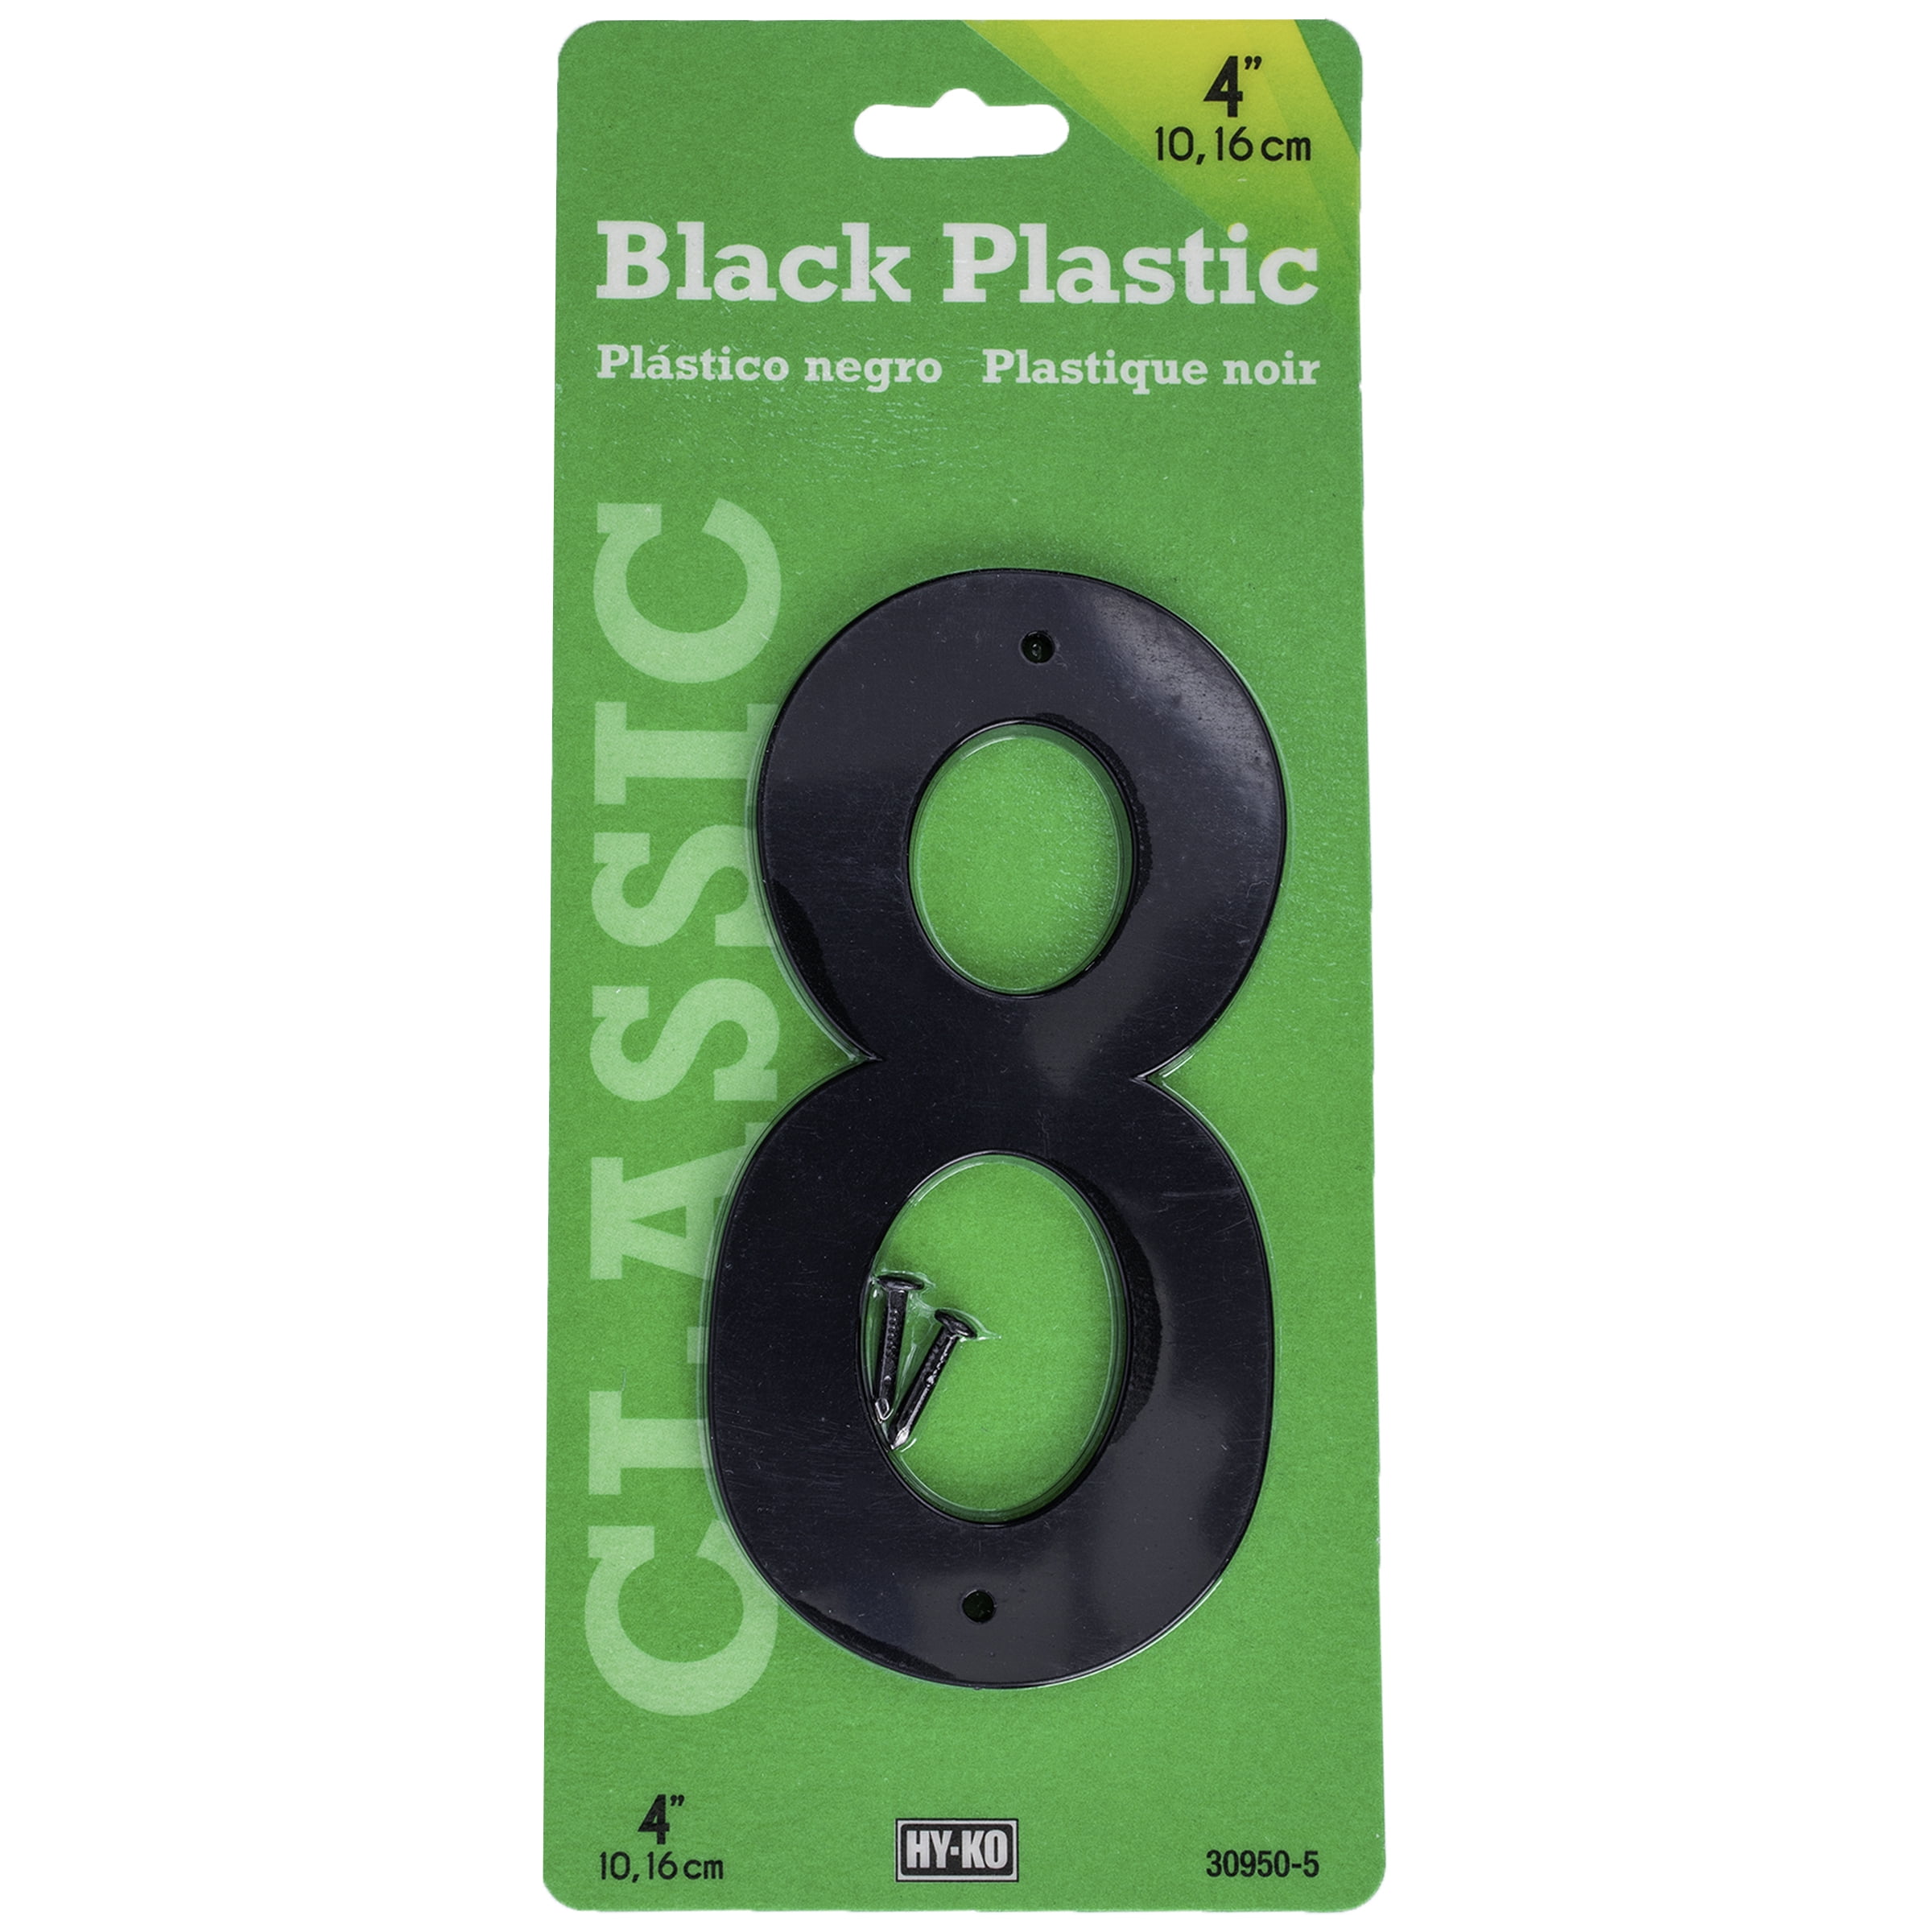 HY-KO 4" BLACK PLASTIC MODERN NUMBER 8